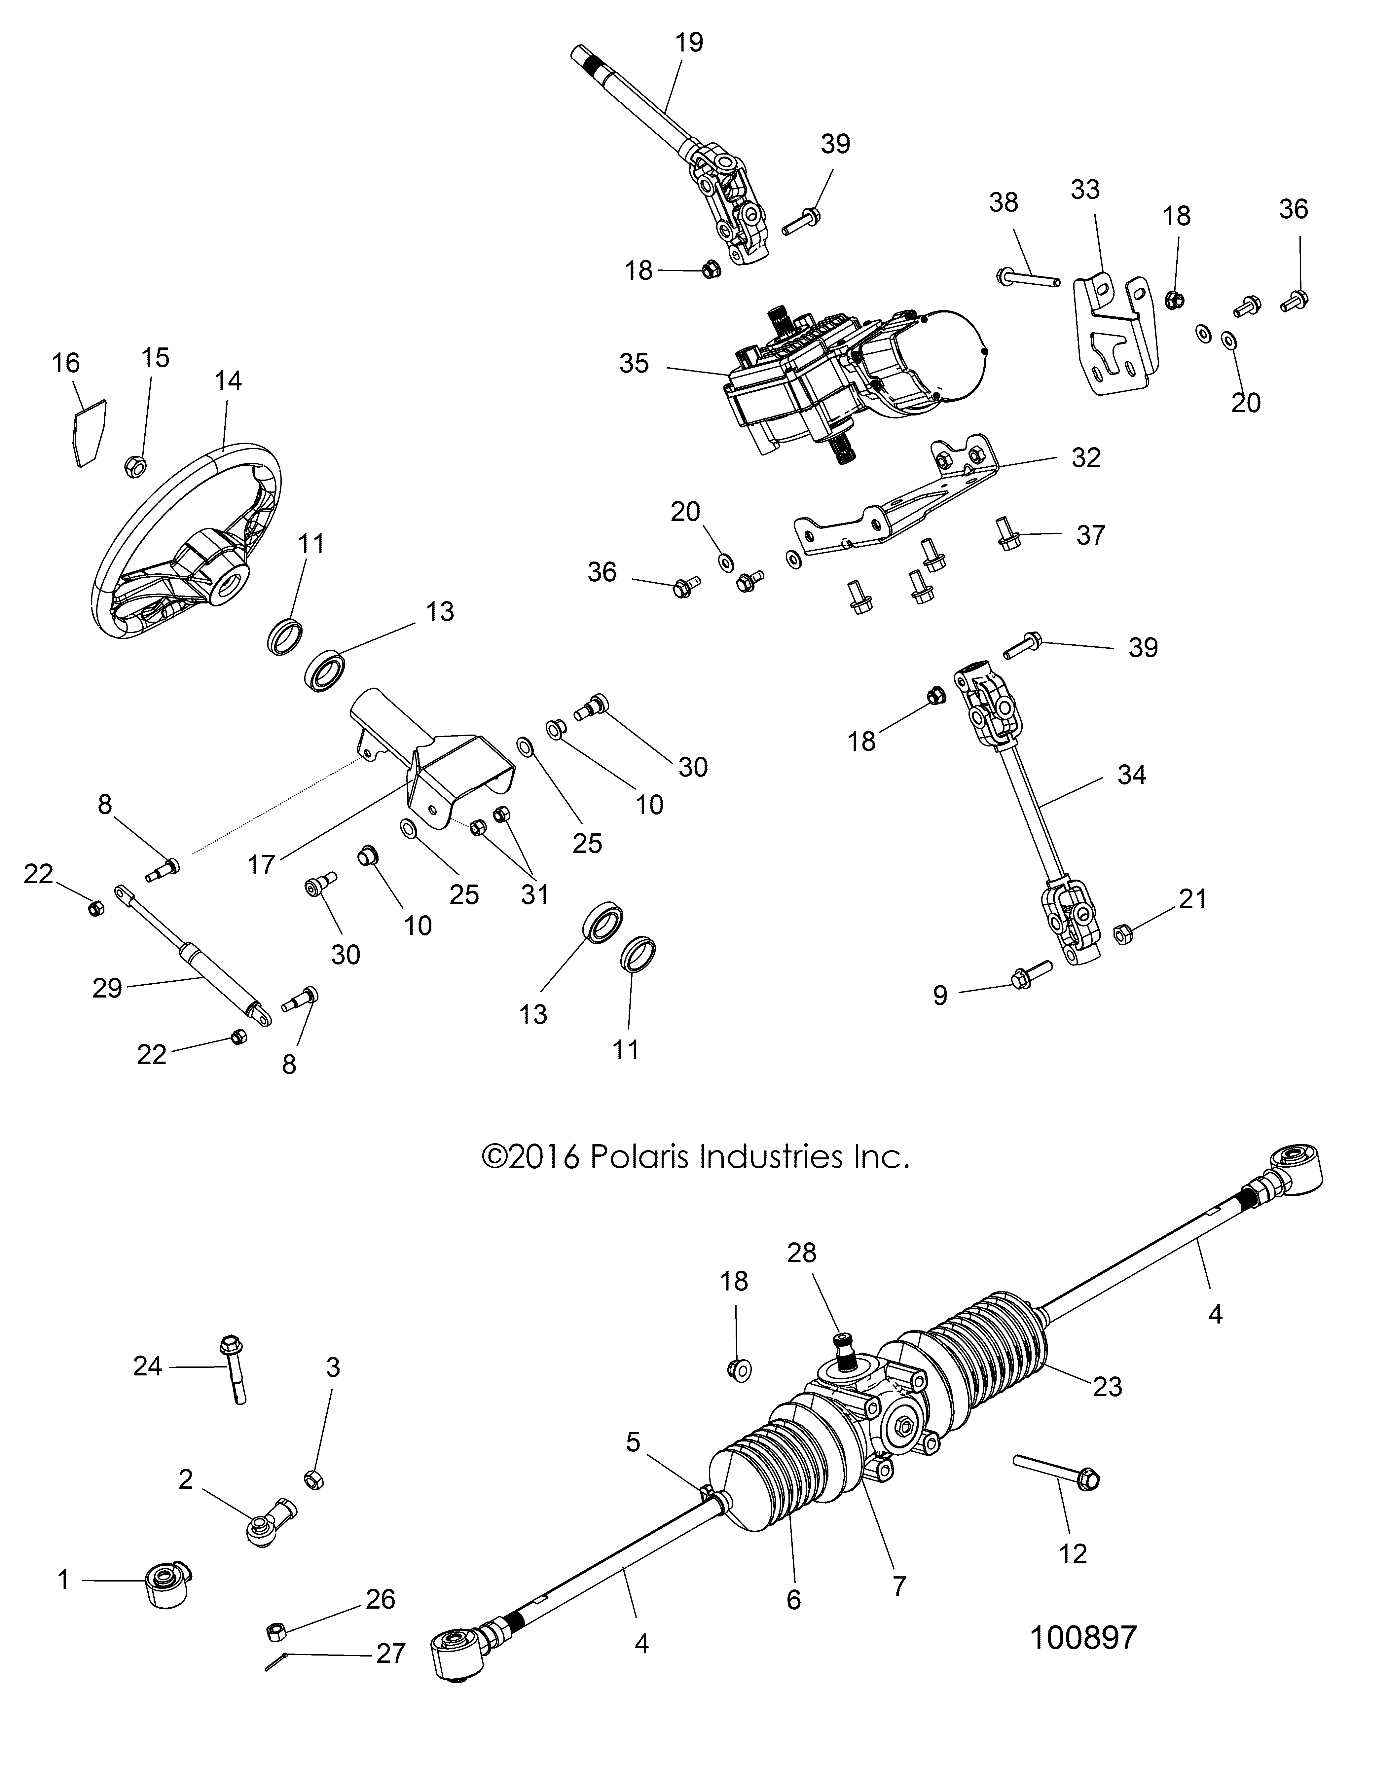 Foto diagrama Polaris que contem a peça 5450255-630